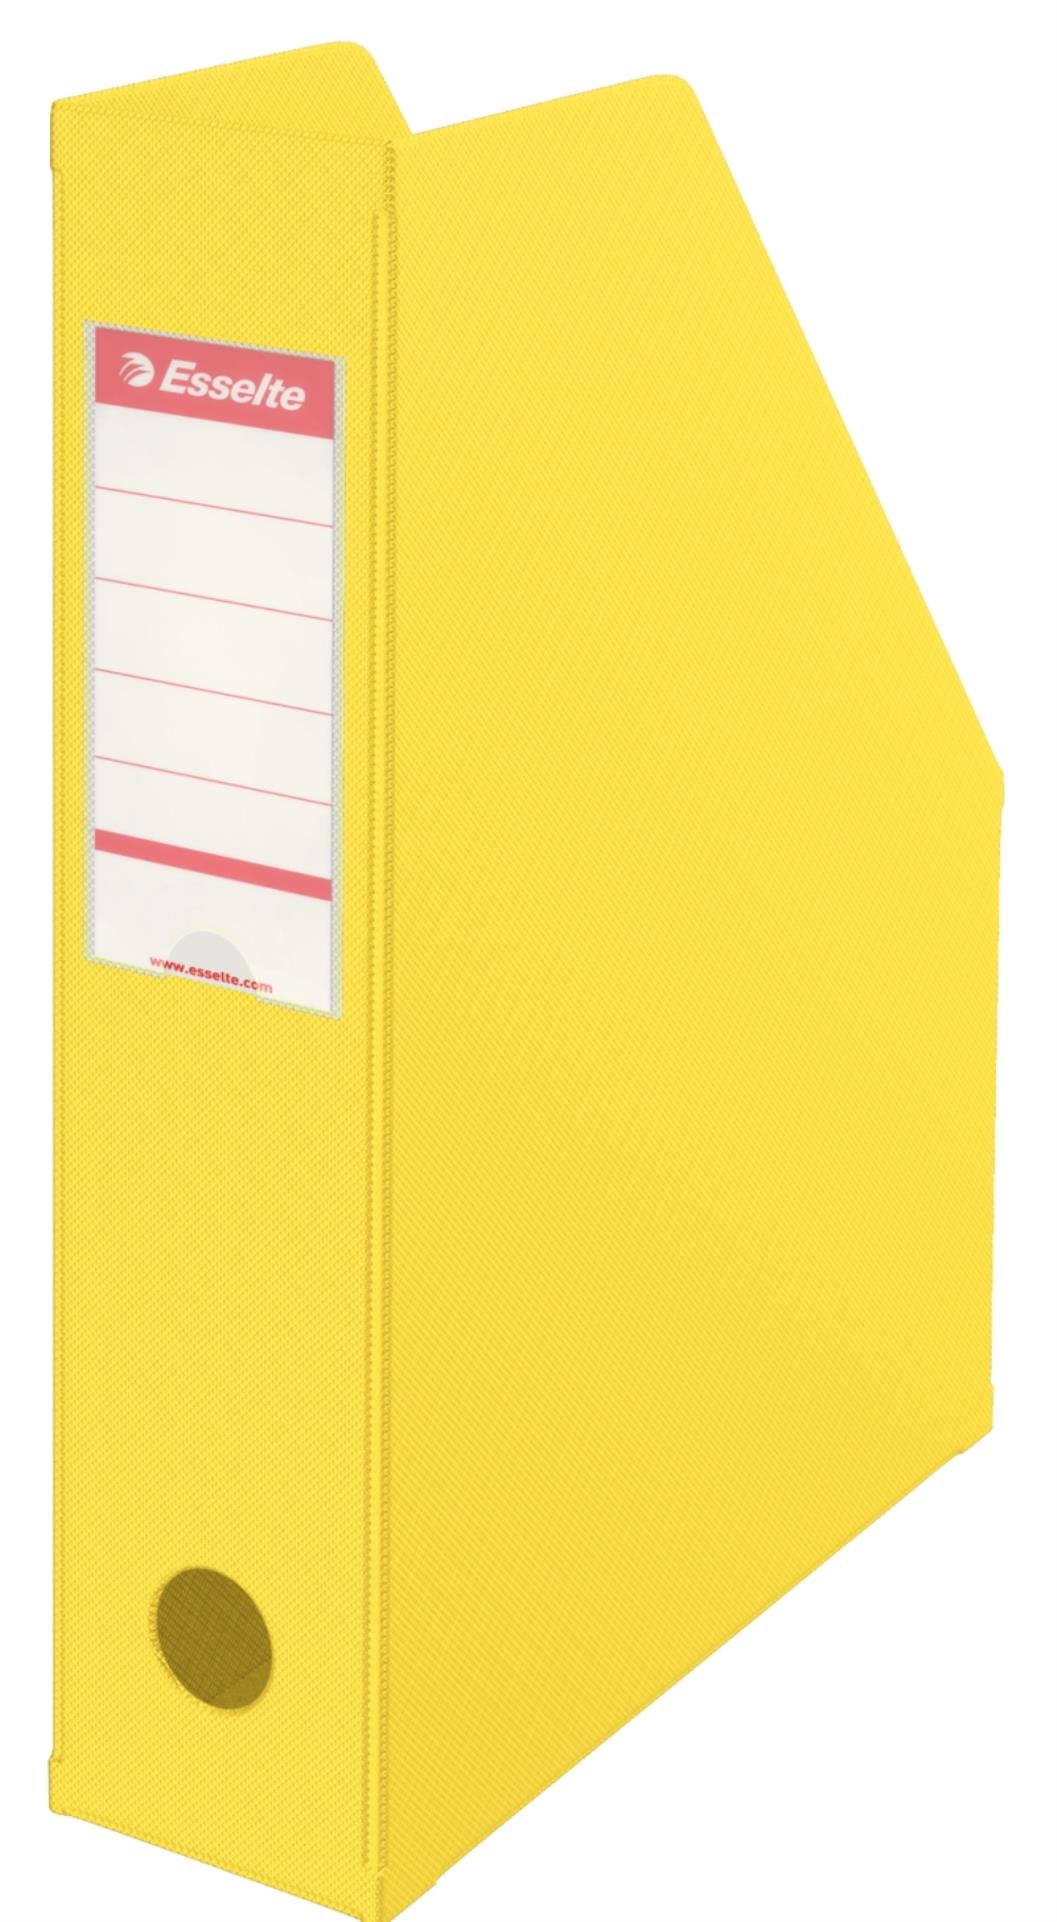 Stojan na časopisy Economy Esselte - 7 cm, žlutý